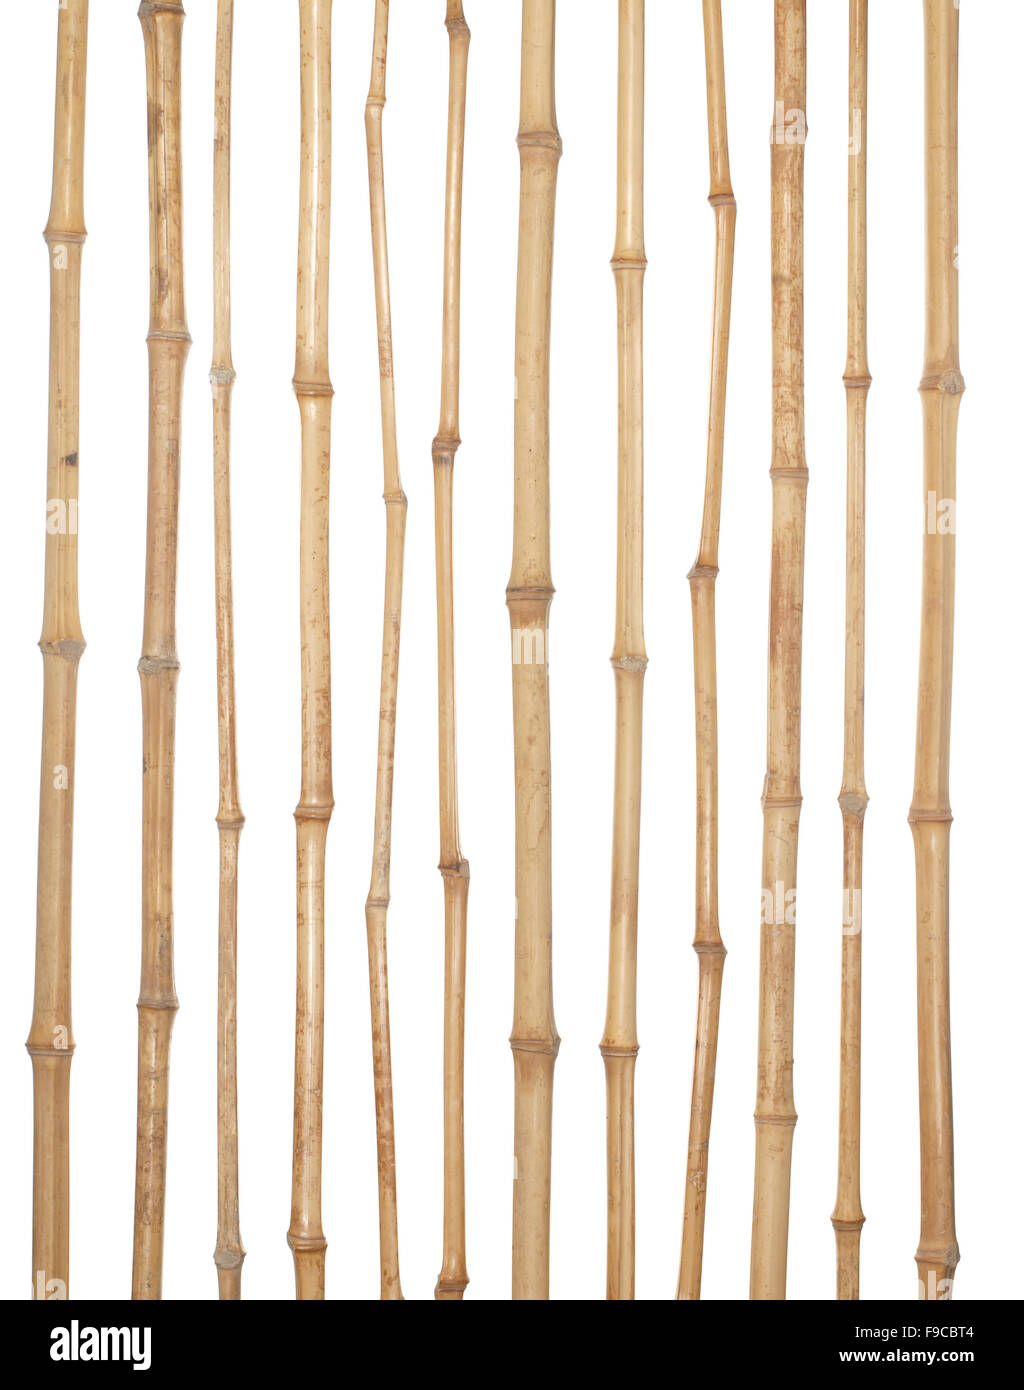 Die Stämme der verschiedenen dicken trockenen Bambus isoliert auf weißem Hintergrund. Stockfoto